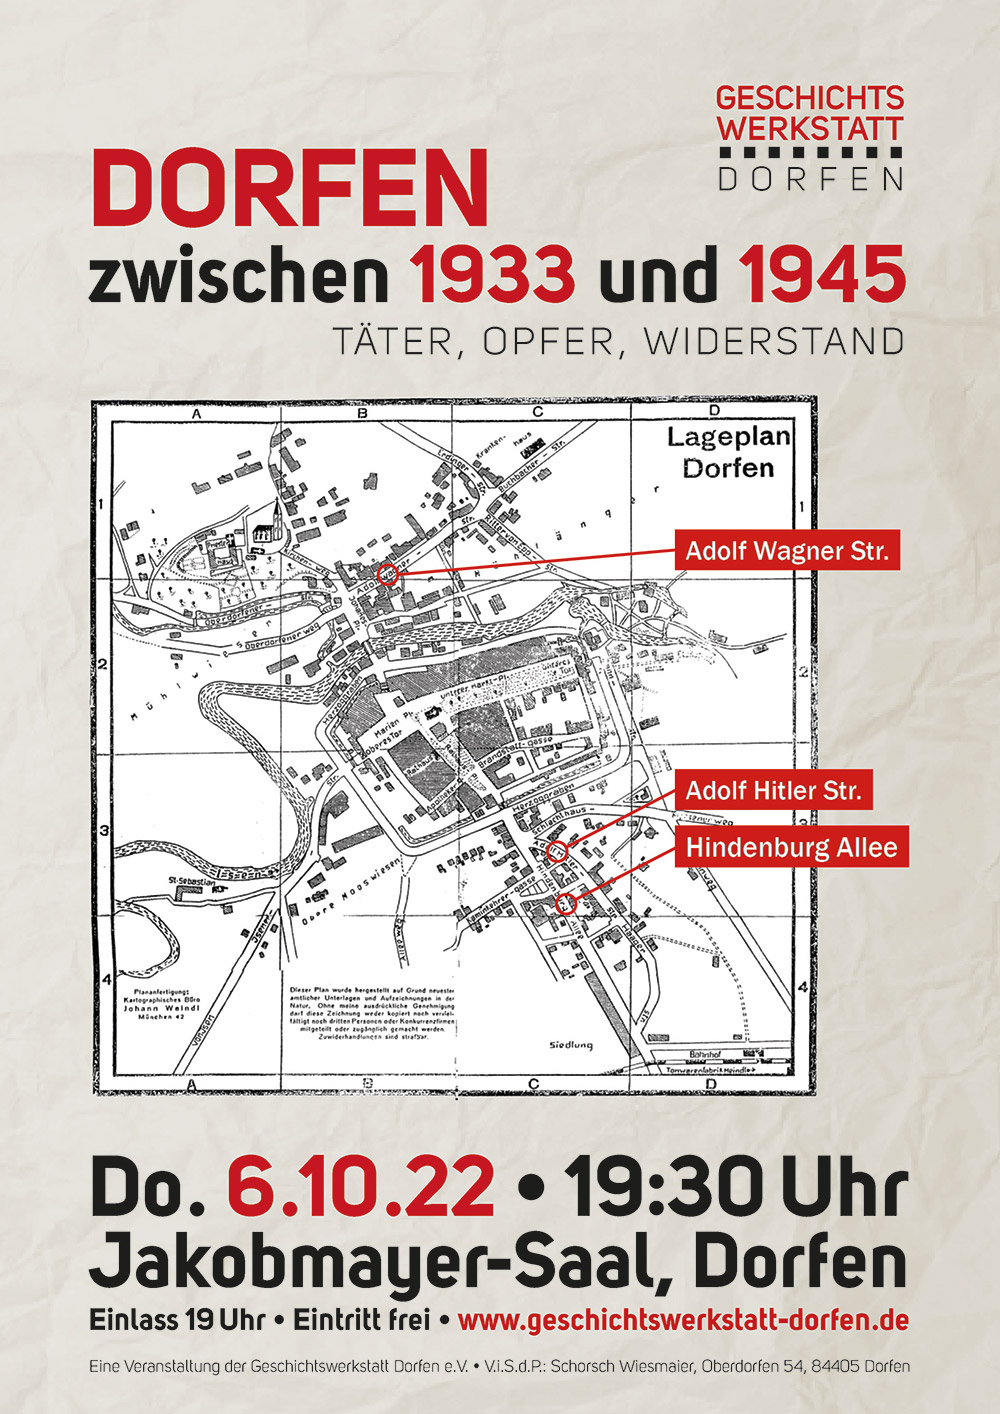 Plakat "Dorfen zwischen 1933 und 1945"